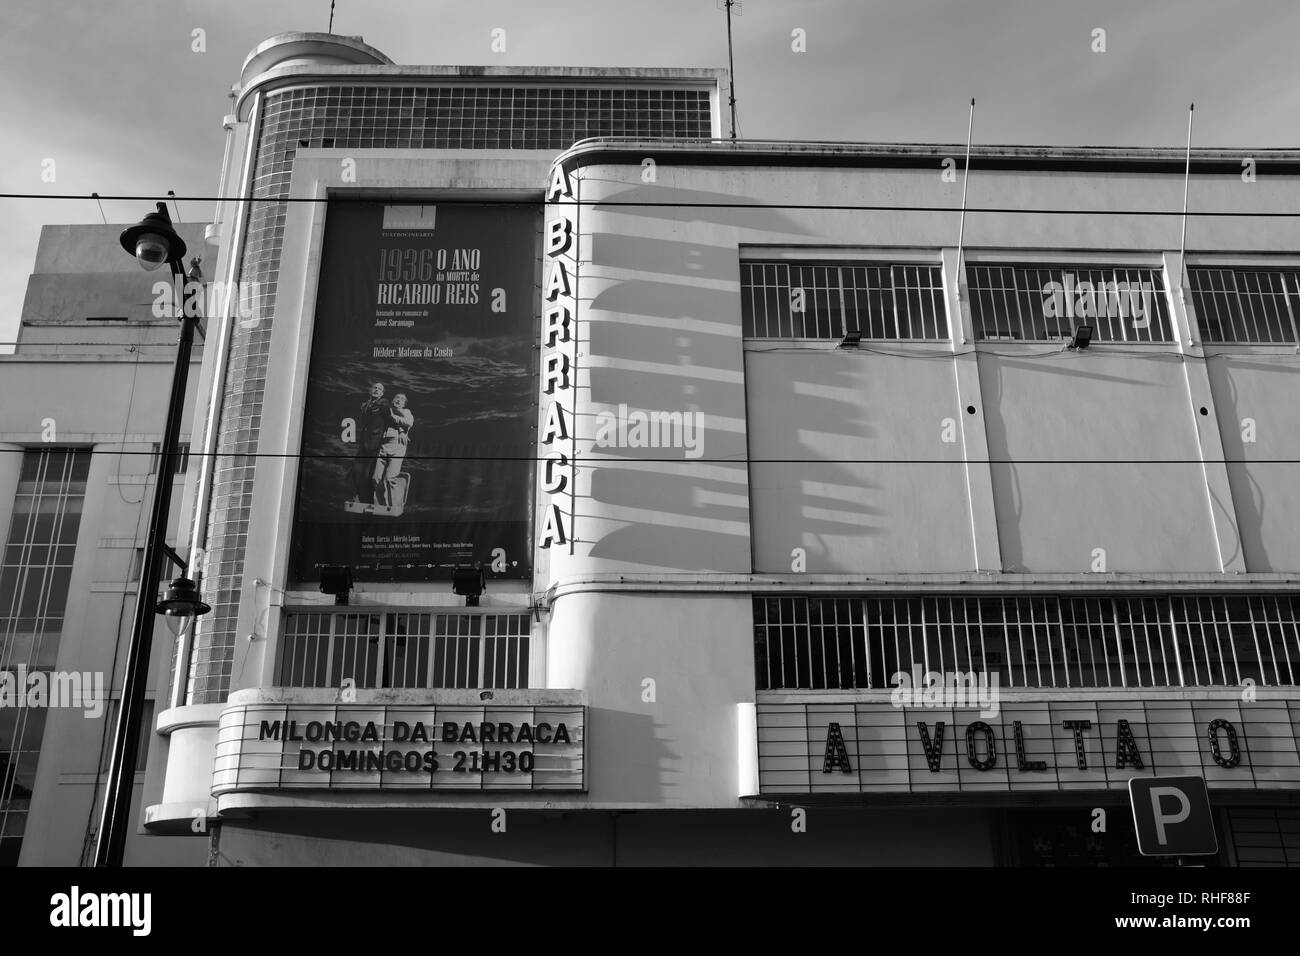 Art deco cinema Abarraca edificio con insegna retrò illuminato da luce solare forte gettando ombre attraverso la facciata Foto Stock